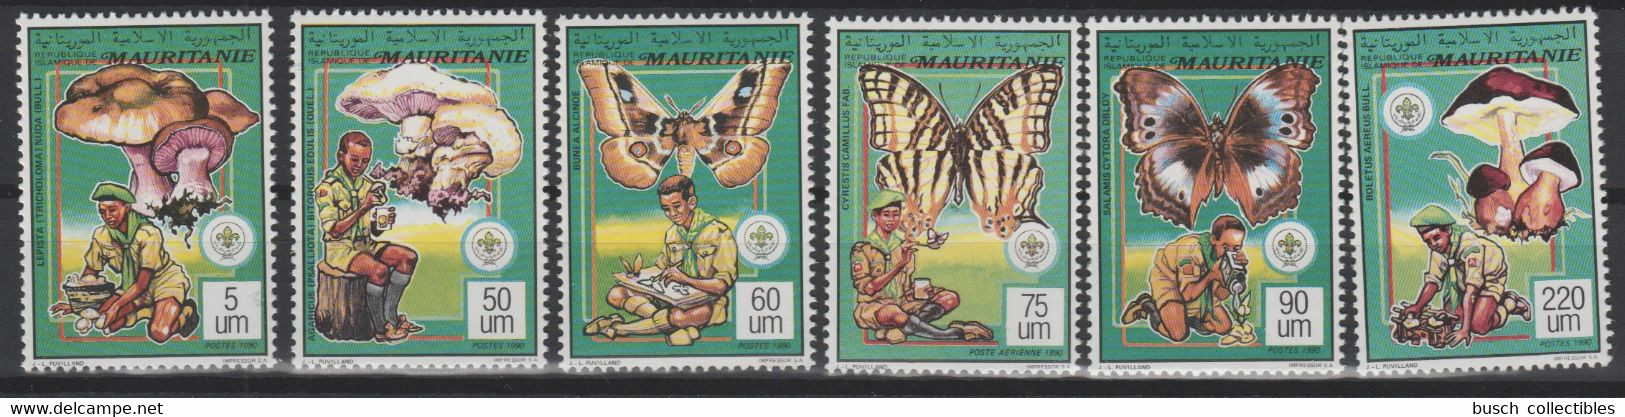 Mauritanie Mauretanien Mauritania 1990 / 1991 Mi. 987 - 992 Scoutisme Scouts Pfadfinder Papillon Schmetterling Butterfly - Mauretanien (1960-...)